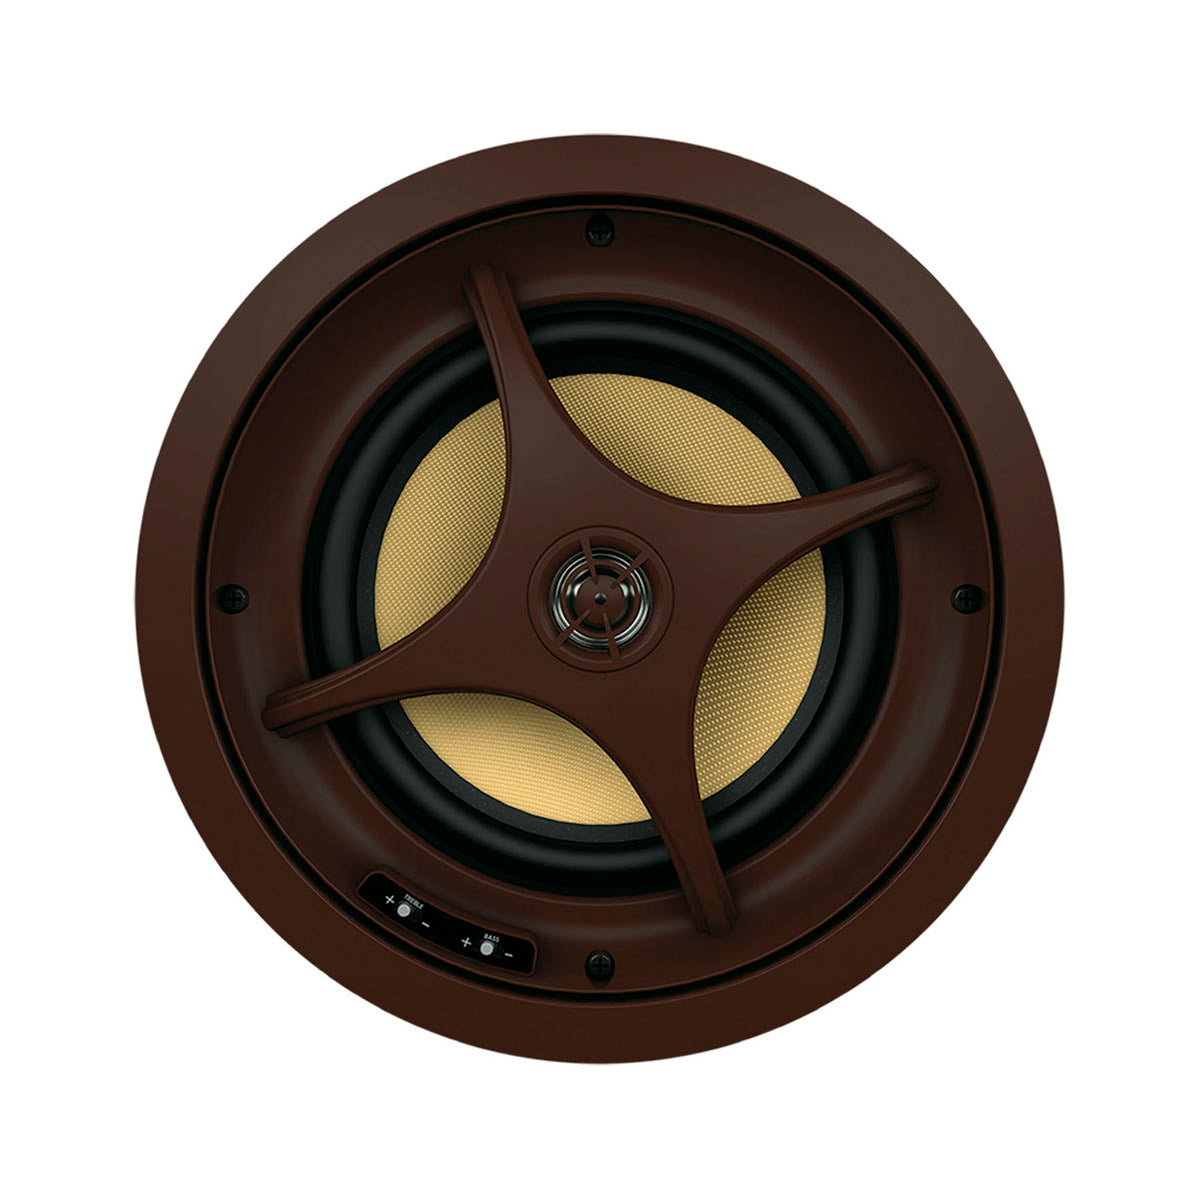 Proficient Audio Signature Series I695s 6.5" Inceiling Speaker  - piece